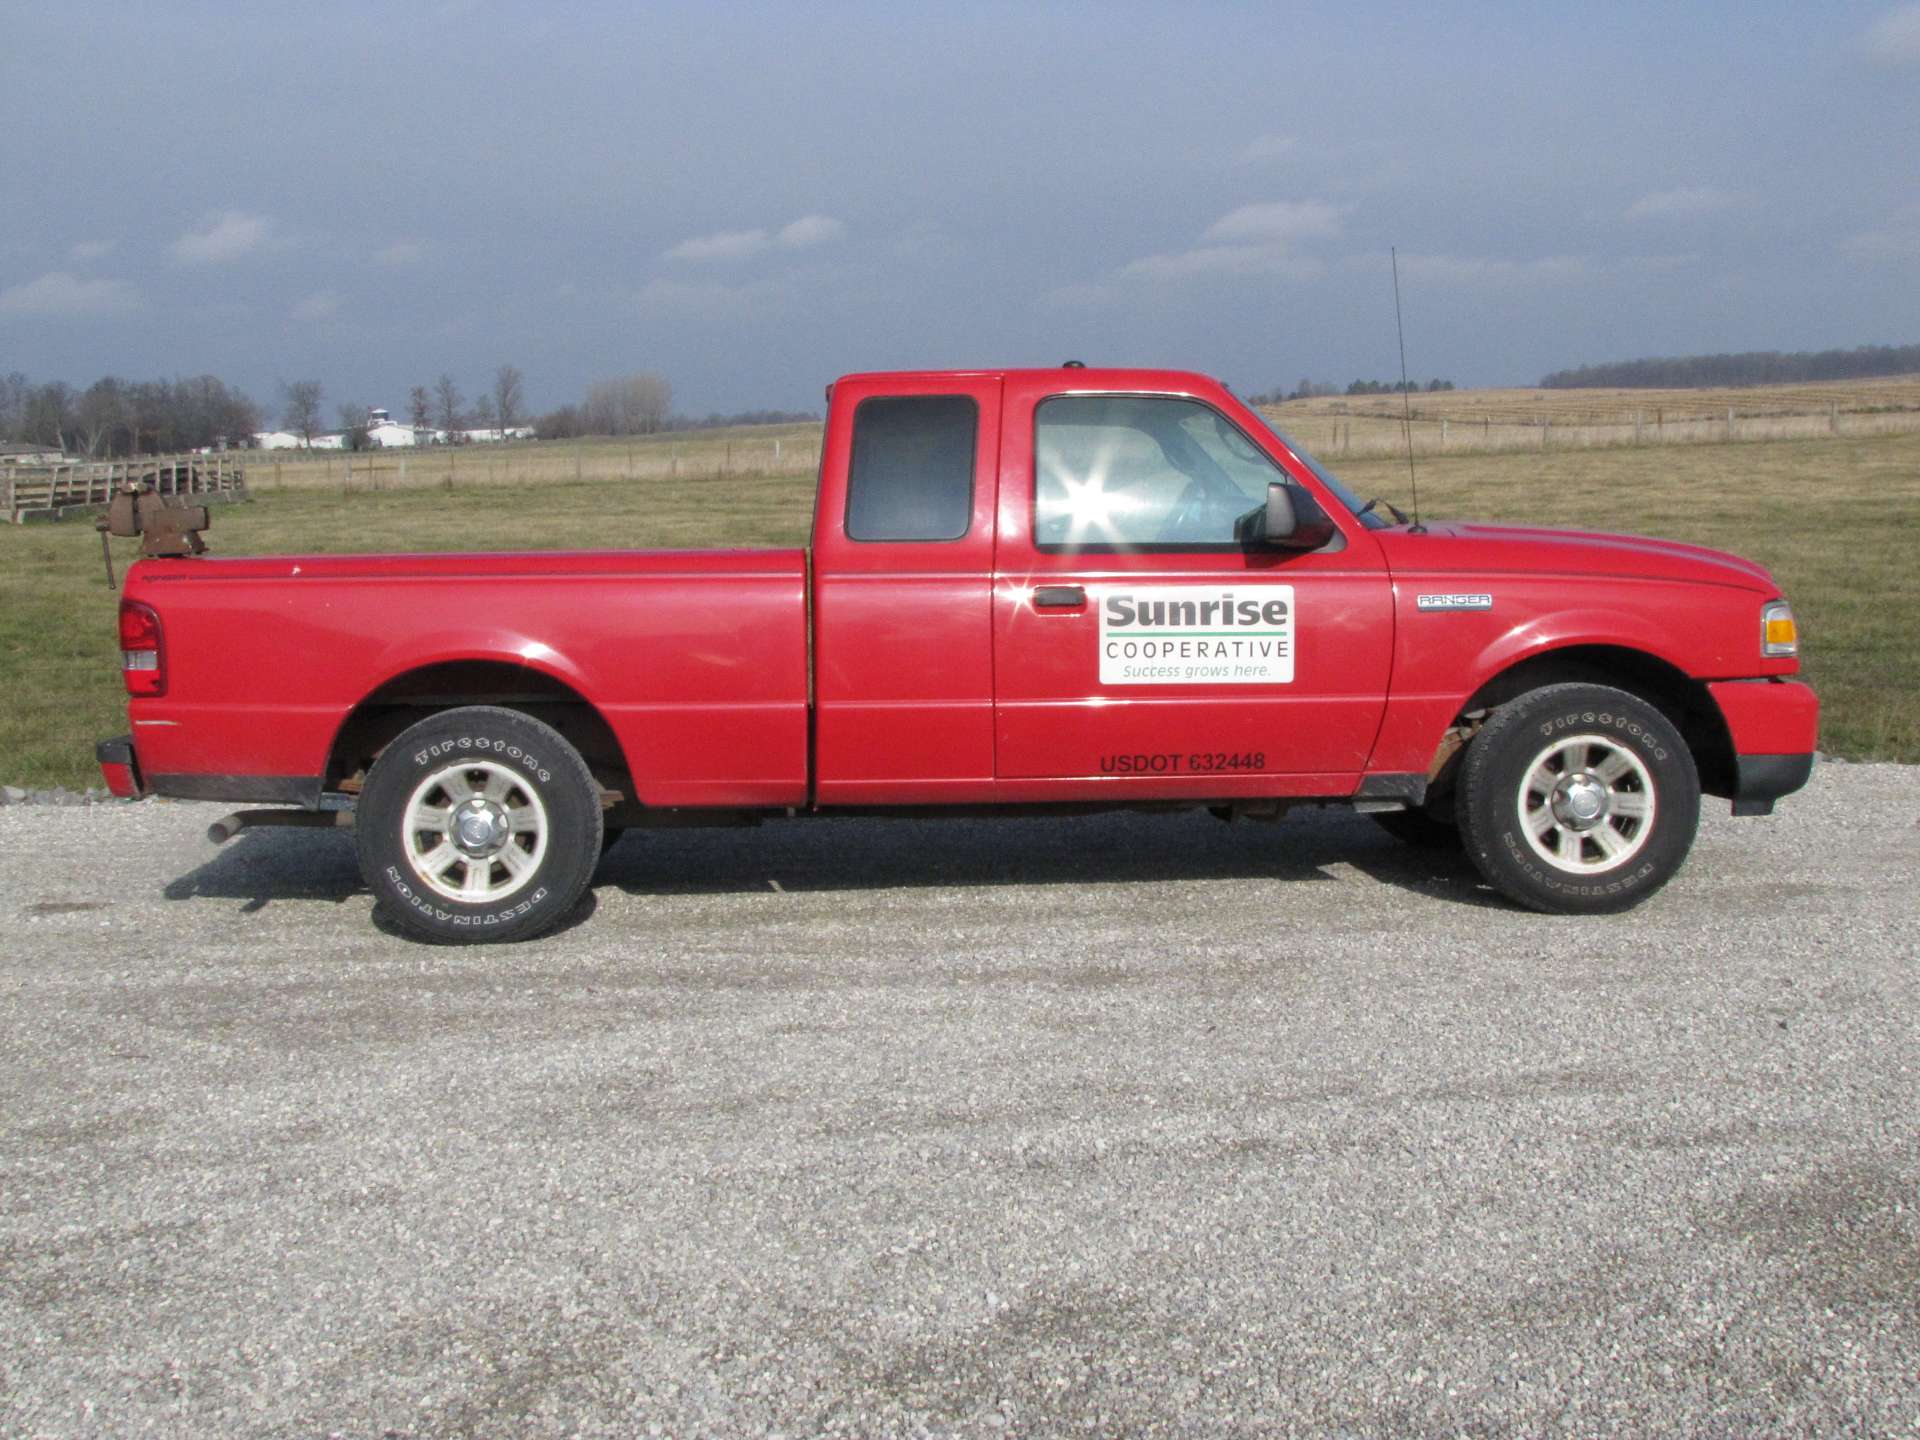 2008 Ford Ranger XLT pickup truck - Image 2 of 57